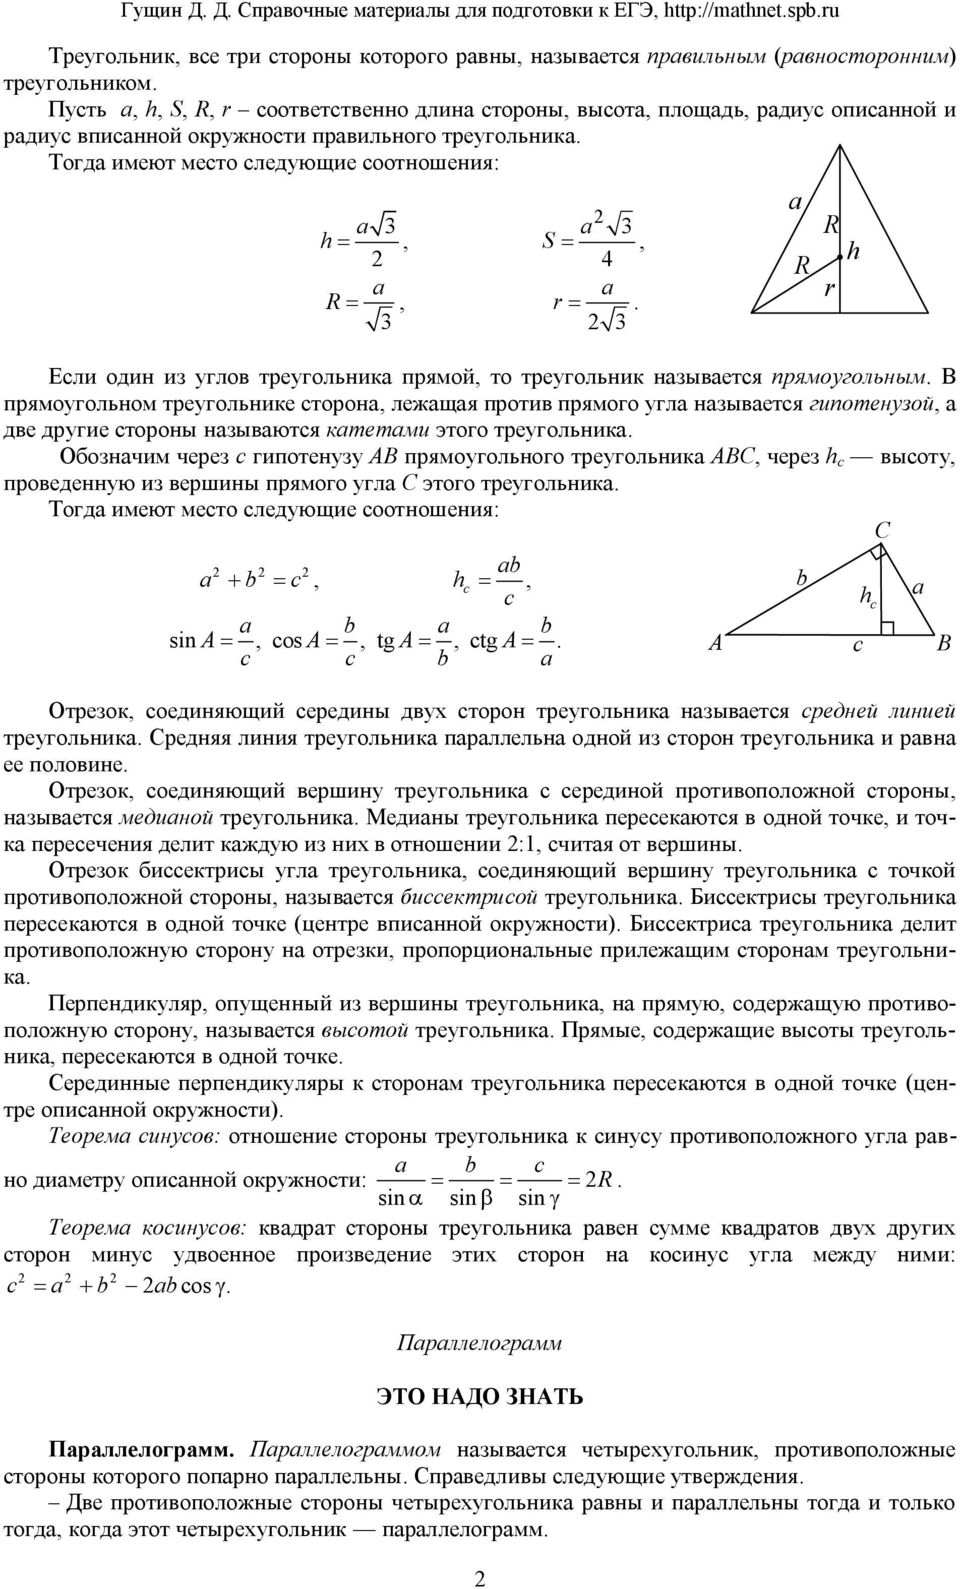 Math-public:chetyre_zamechatelnye_tochki_v_treugolnike [президентский фмл №239]